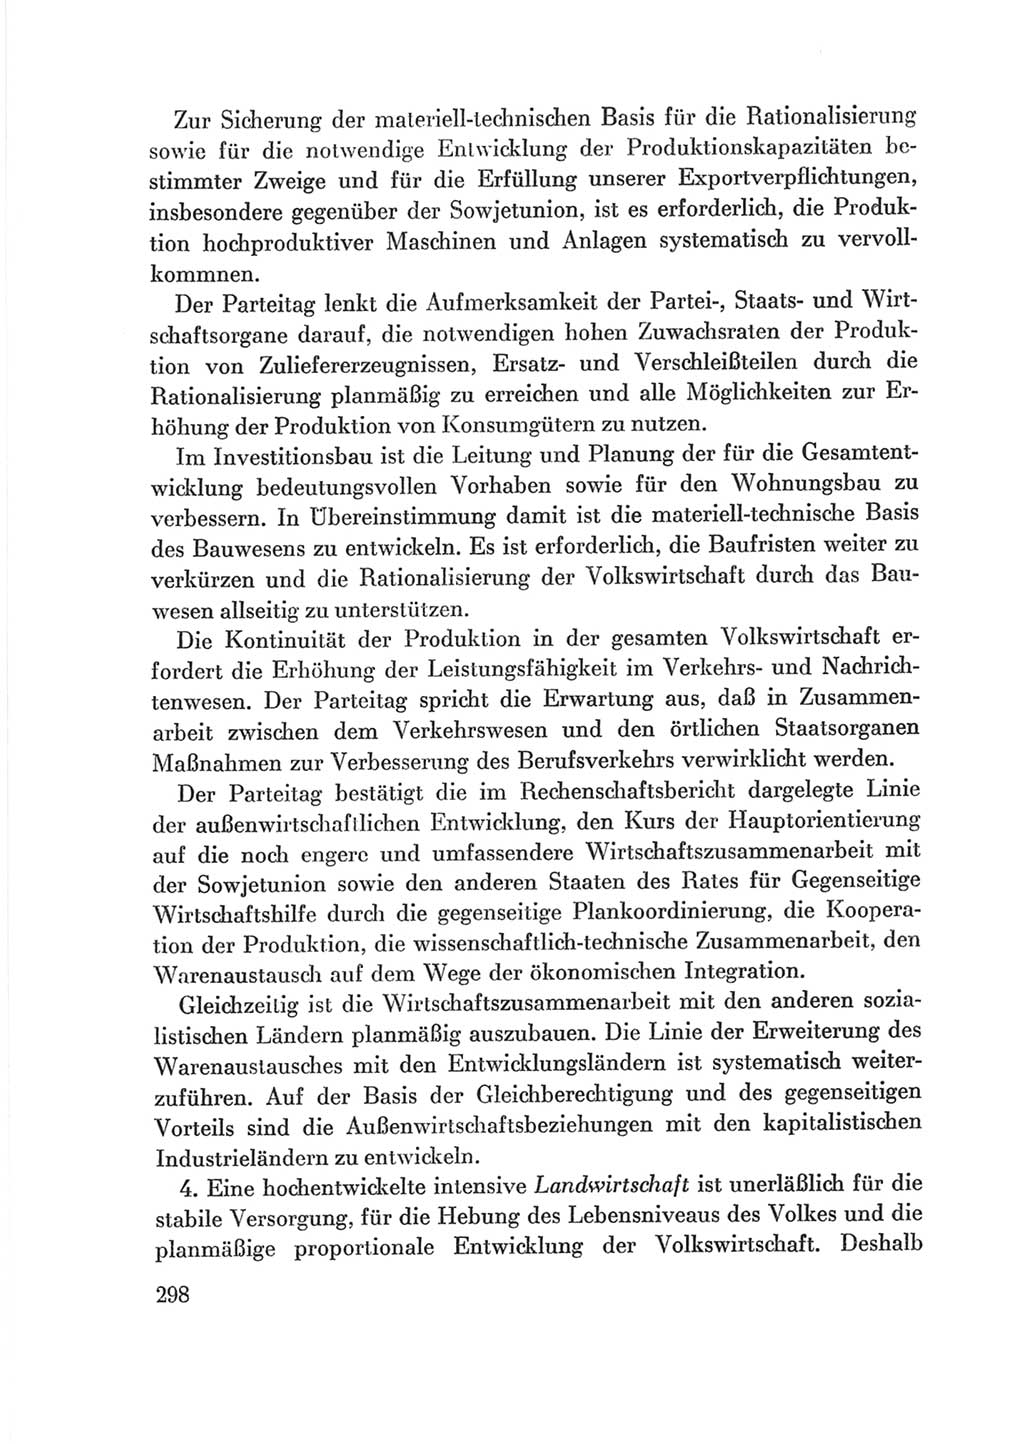 Protokoll der Verhandlungen des Ⅷ. Parteitages der Sozialistischen Einheitspartei Deutschlands (SED) [Deutsche Demokratische Republik (DDR)] 1971, Band 2, Seite 298 (Prot. Verh. Ⅷ. PT SED DDR 1971, Bd. 2, S. 298)